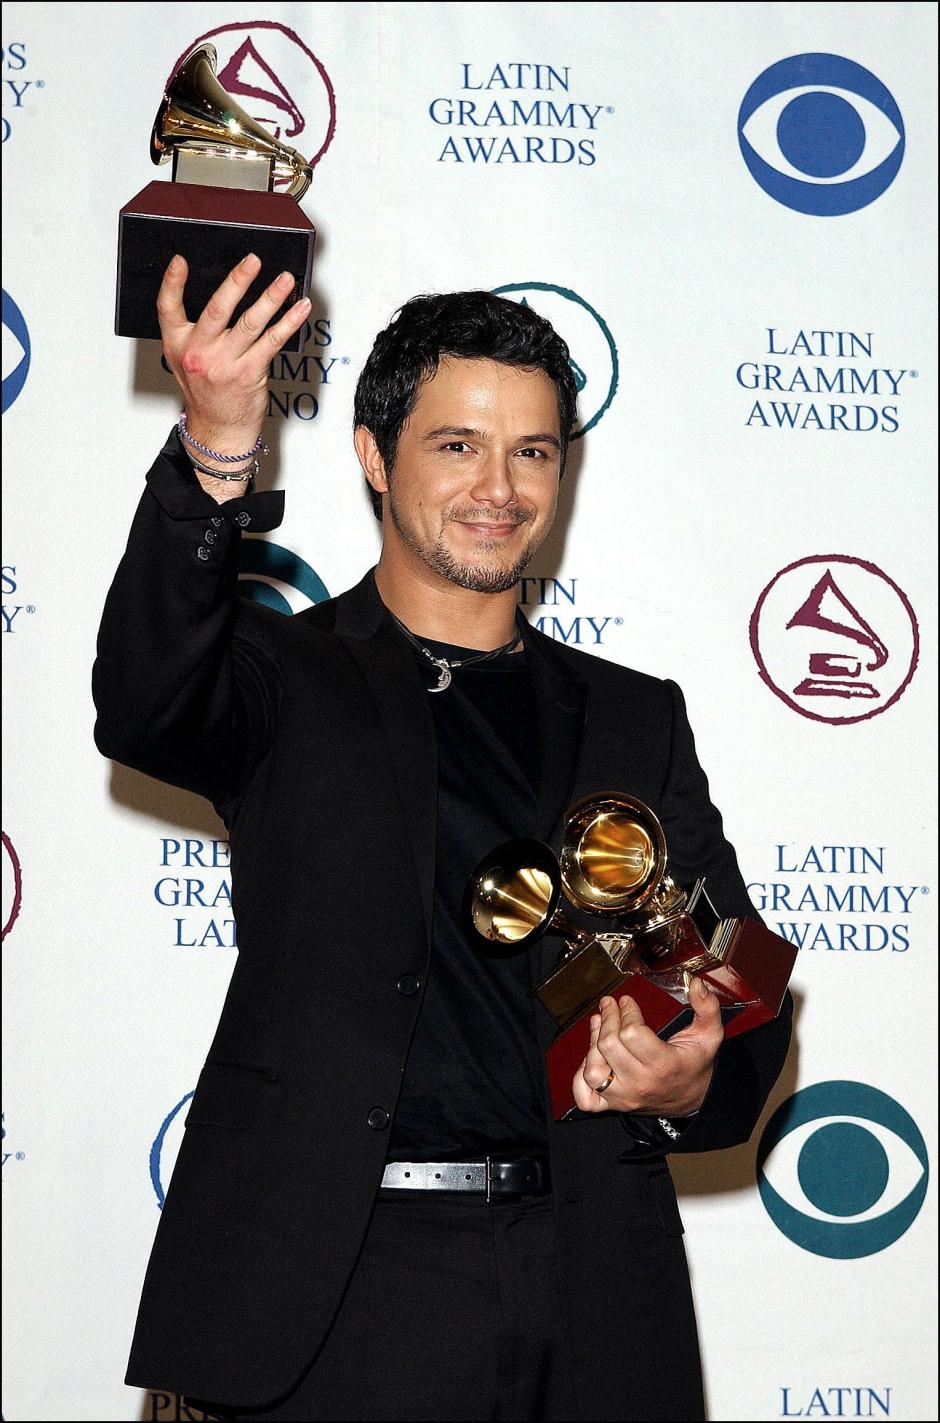 EL CANTANTE ALEJANDRO SANZ GALARDONADO DURANTE LA 3 EDICION DE LOS PREMIOS GRAMMY LATINOS 2002
Lionel Hahn / ABACA 38112 / © KORPA
18/09/02 
LOS ANGELES

 *** Local Caption *** © Lionel Hahn/ABACA. 38112-1. Los Angeles-CA-USA. 09/18/2002. The 3rd Annual Latin Grammy Awards at the Kodak Theatre in Hollywood.
Pictured : Alejandro Sanz winner of 3 Grammys including Record of the Year (Y solo se me ocurre Amarte), Album of the Year (MTV Unplugged) / Song of the Year (Y solo se me ocurre Amarte).